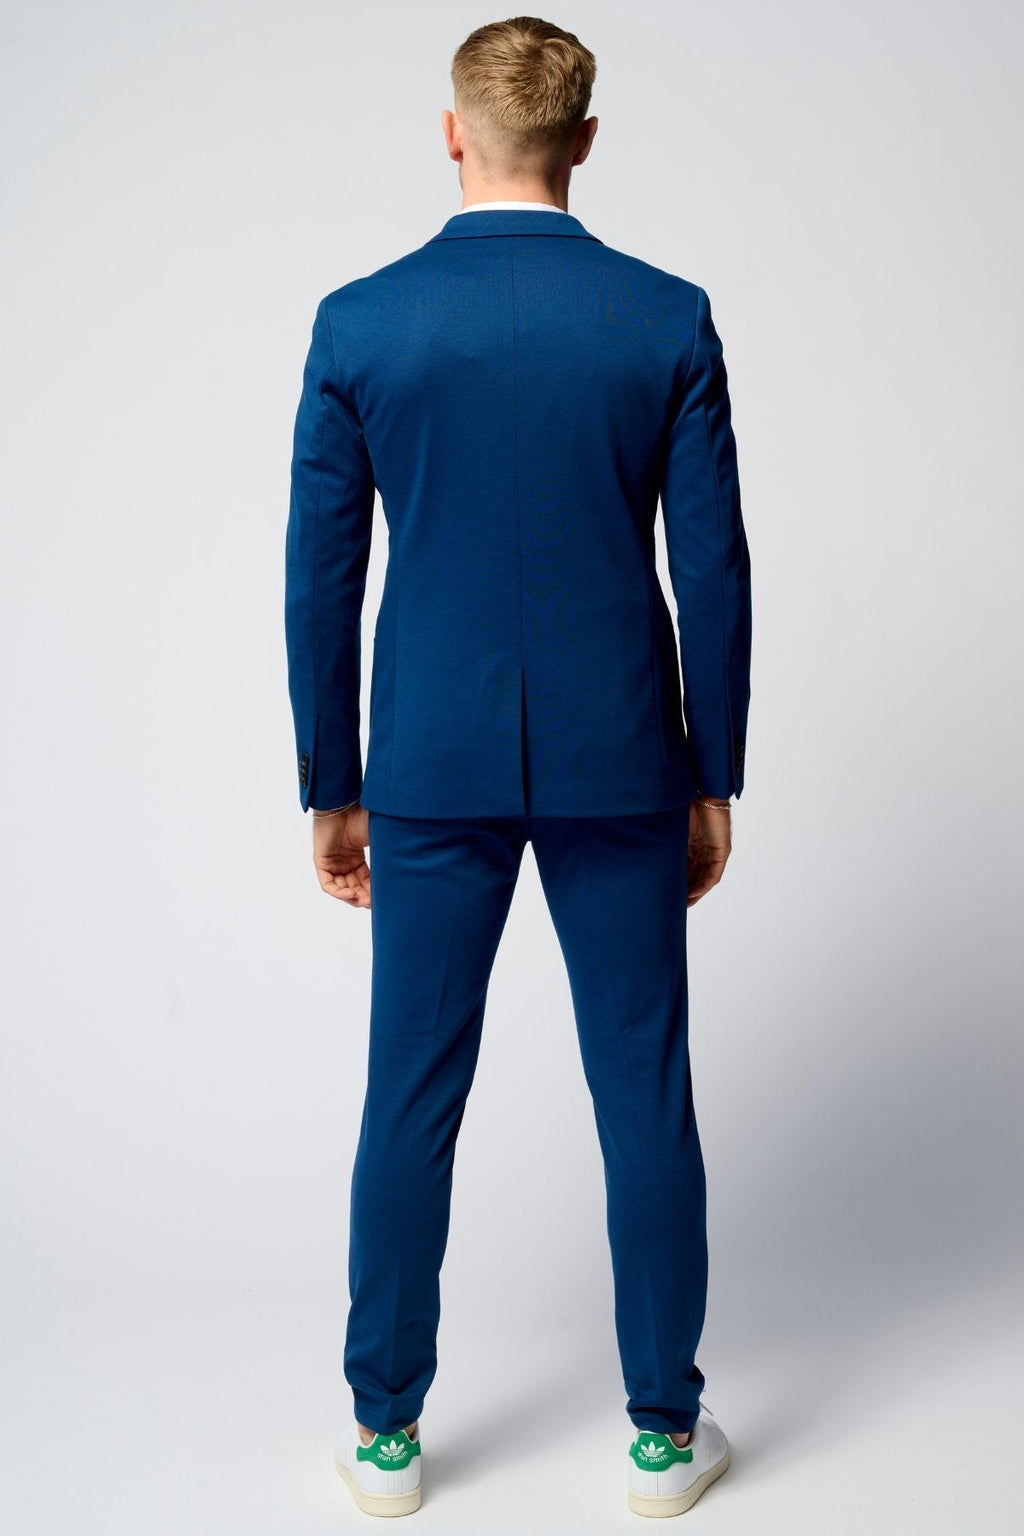 Originalet Performance Kostym (Blå) + Skjorta & Slips - Paketerbjudanden (V.I.P)